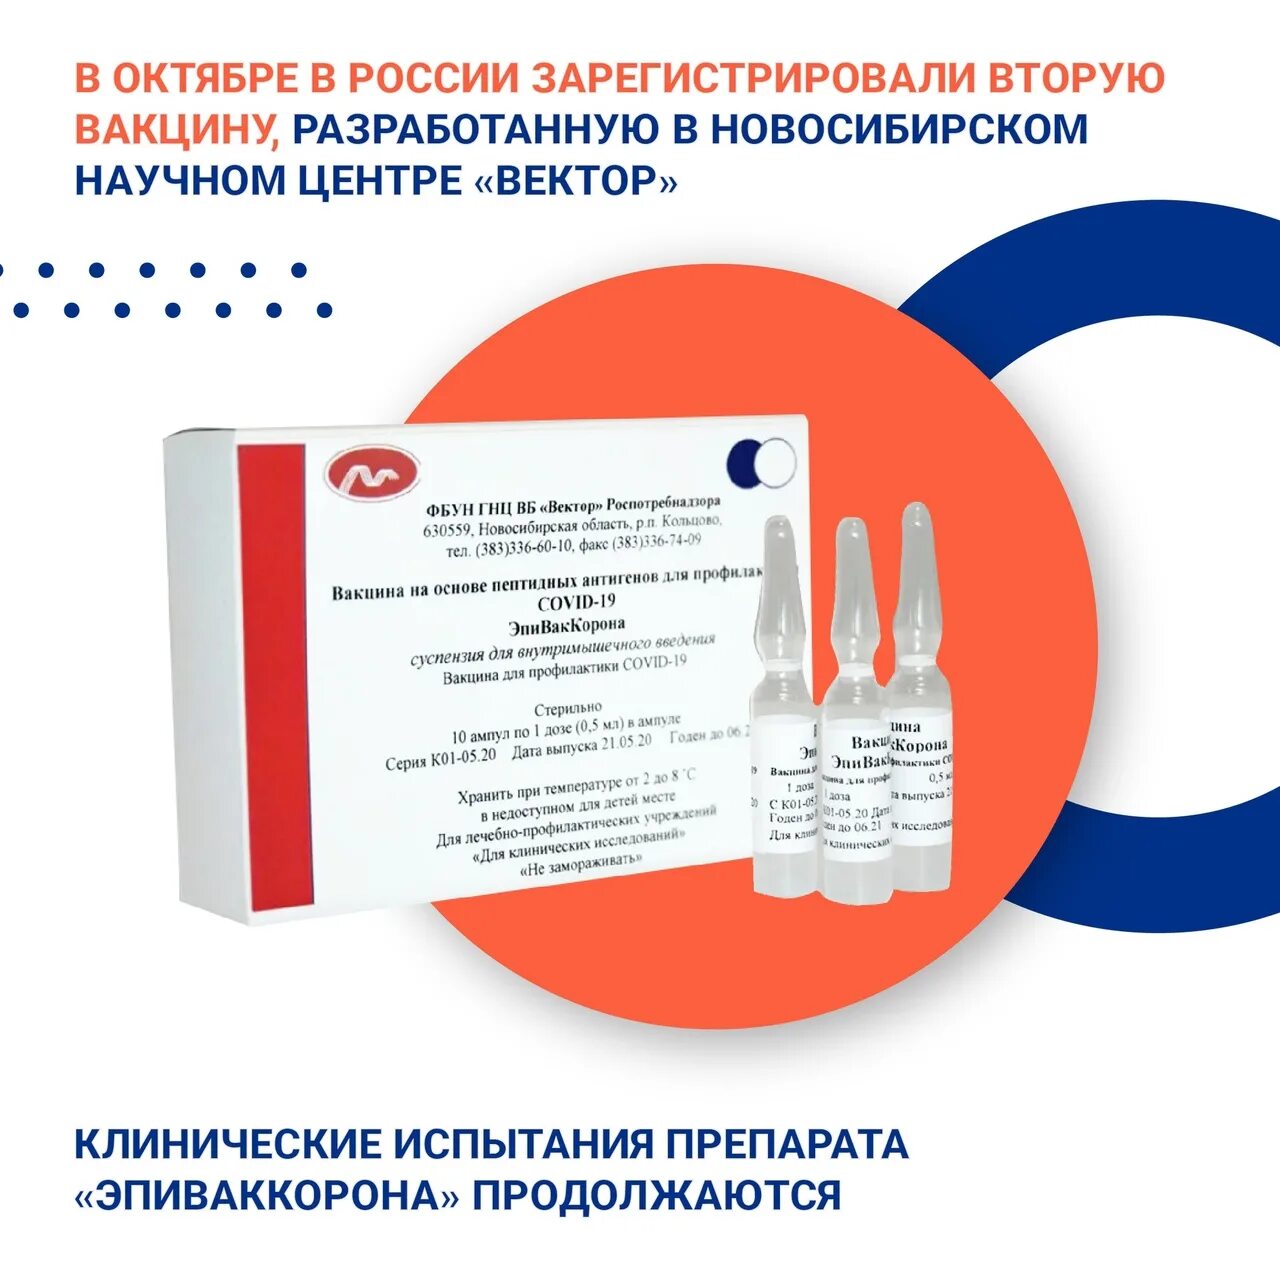 Наличие вакцин в поликлиниках. Где сделать прививку. Однокомпонентная вакцина от коронавируса. Куда делают прививку от коронавируса. Название прививки от коронавируса в России.